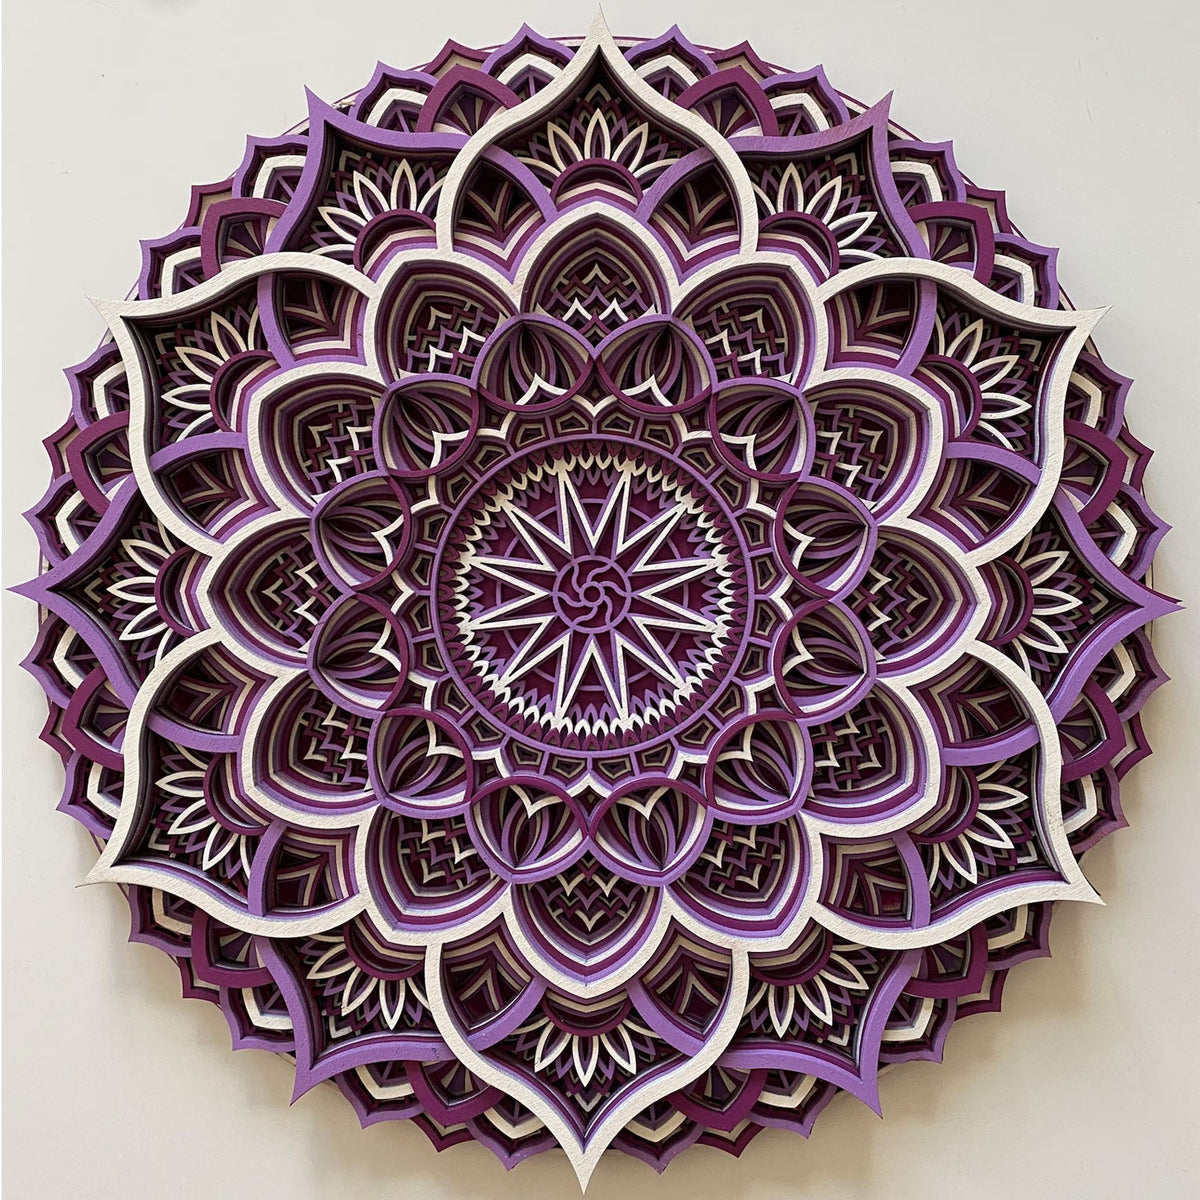 Elwyn Wooden Mandala Wall Art - Purple/White - Notbrand